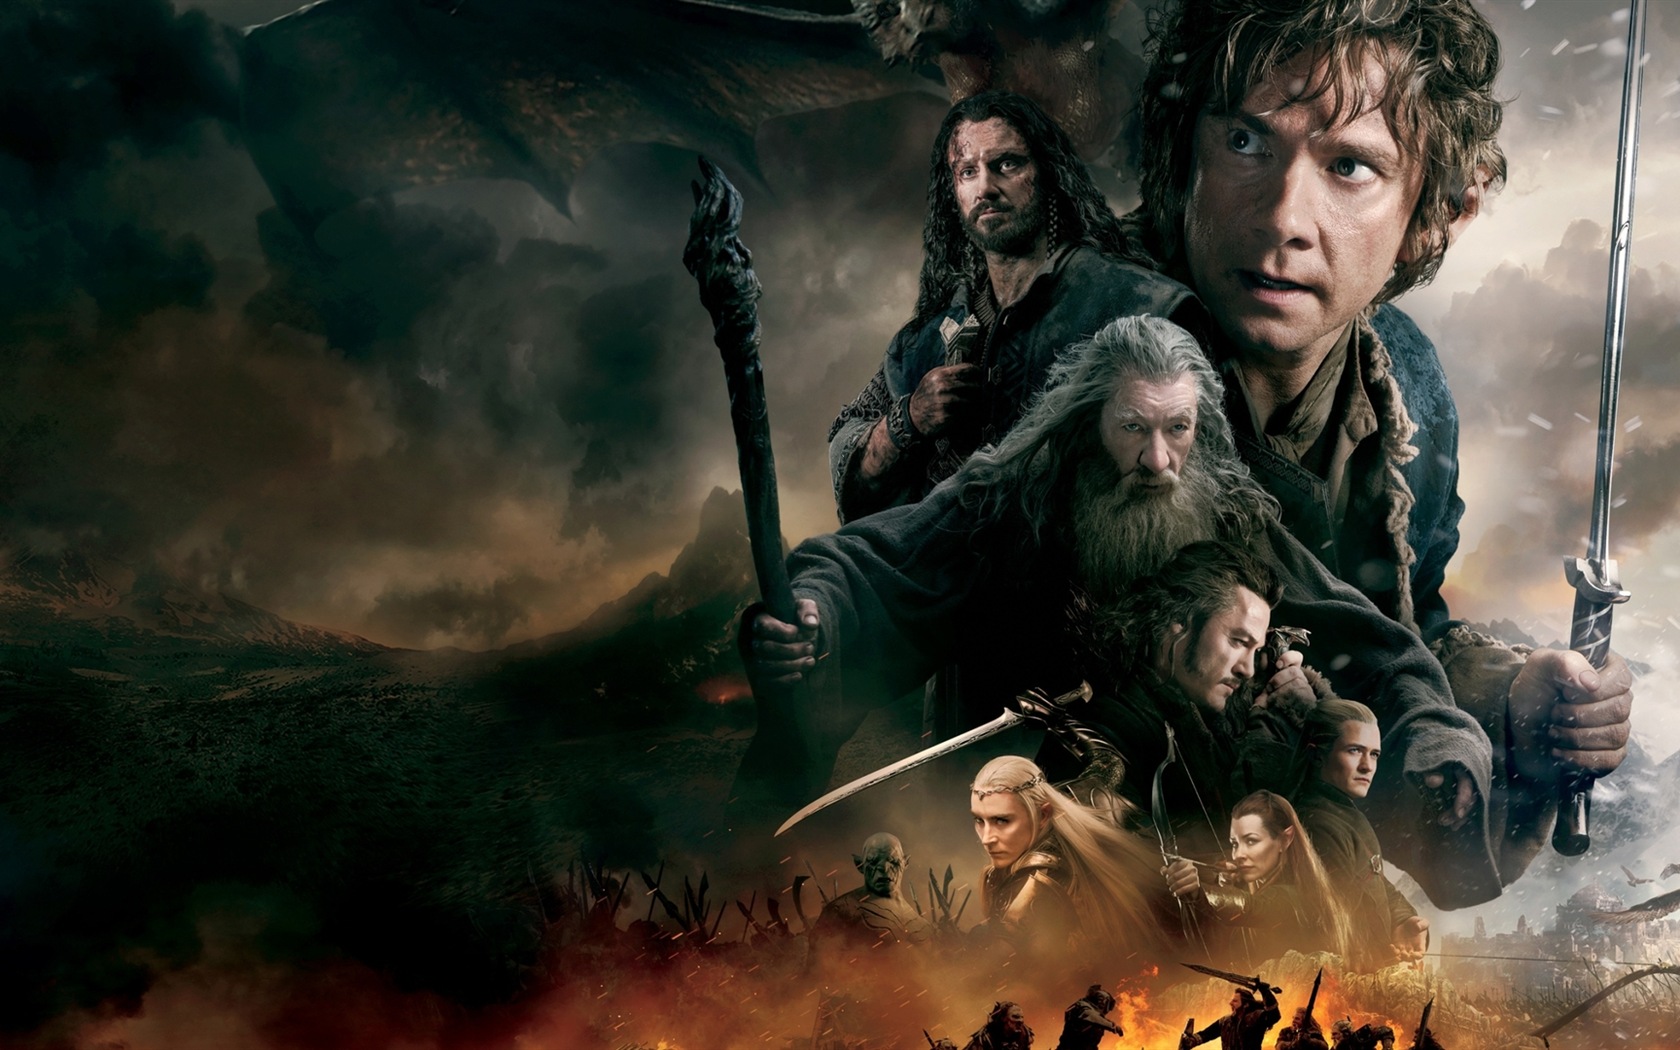 El Hobbit: La Batalla de los Cinco Ejércitos, fondos de pantalla de películas de alta definición #10 - 1680x1050